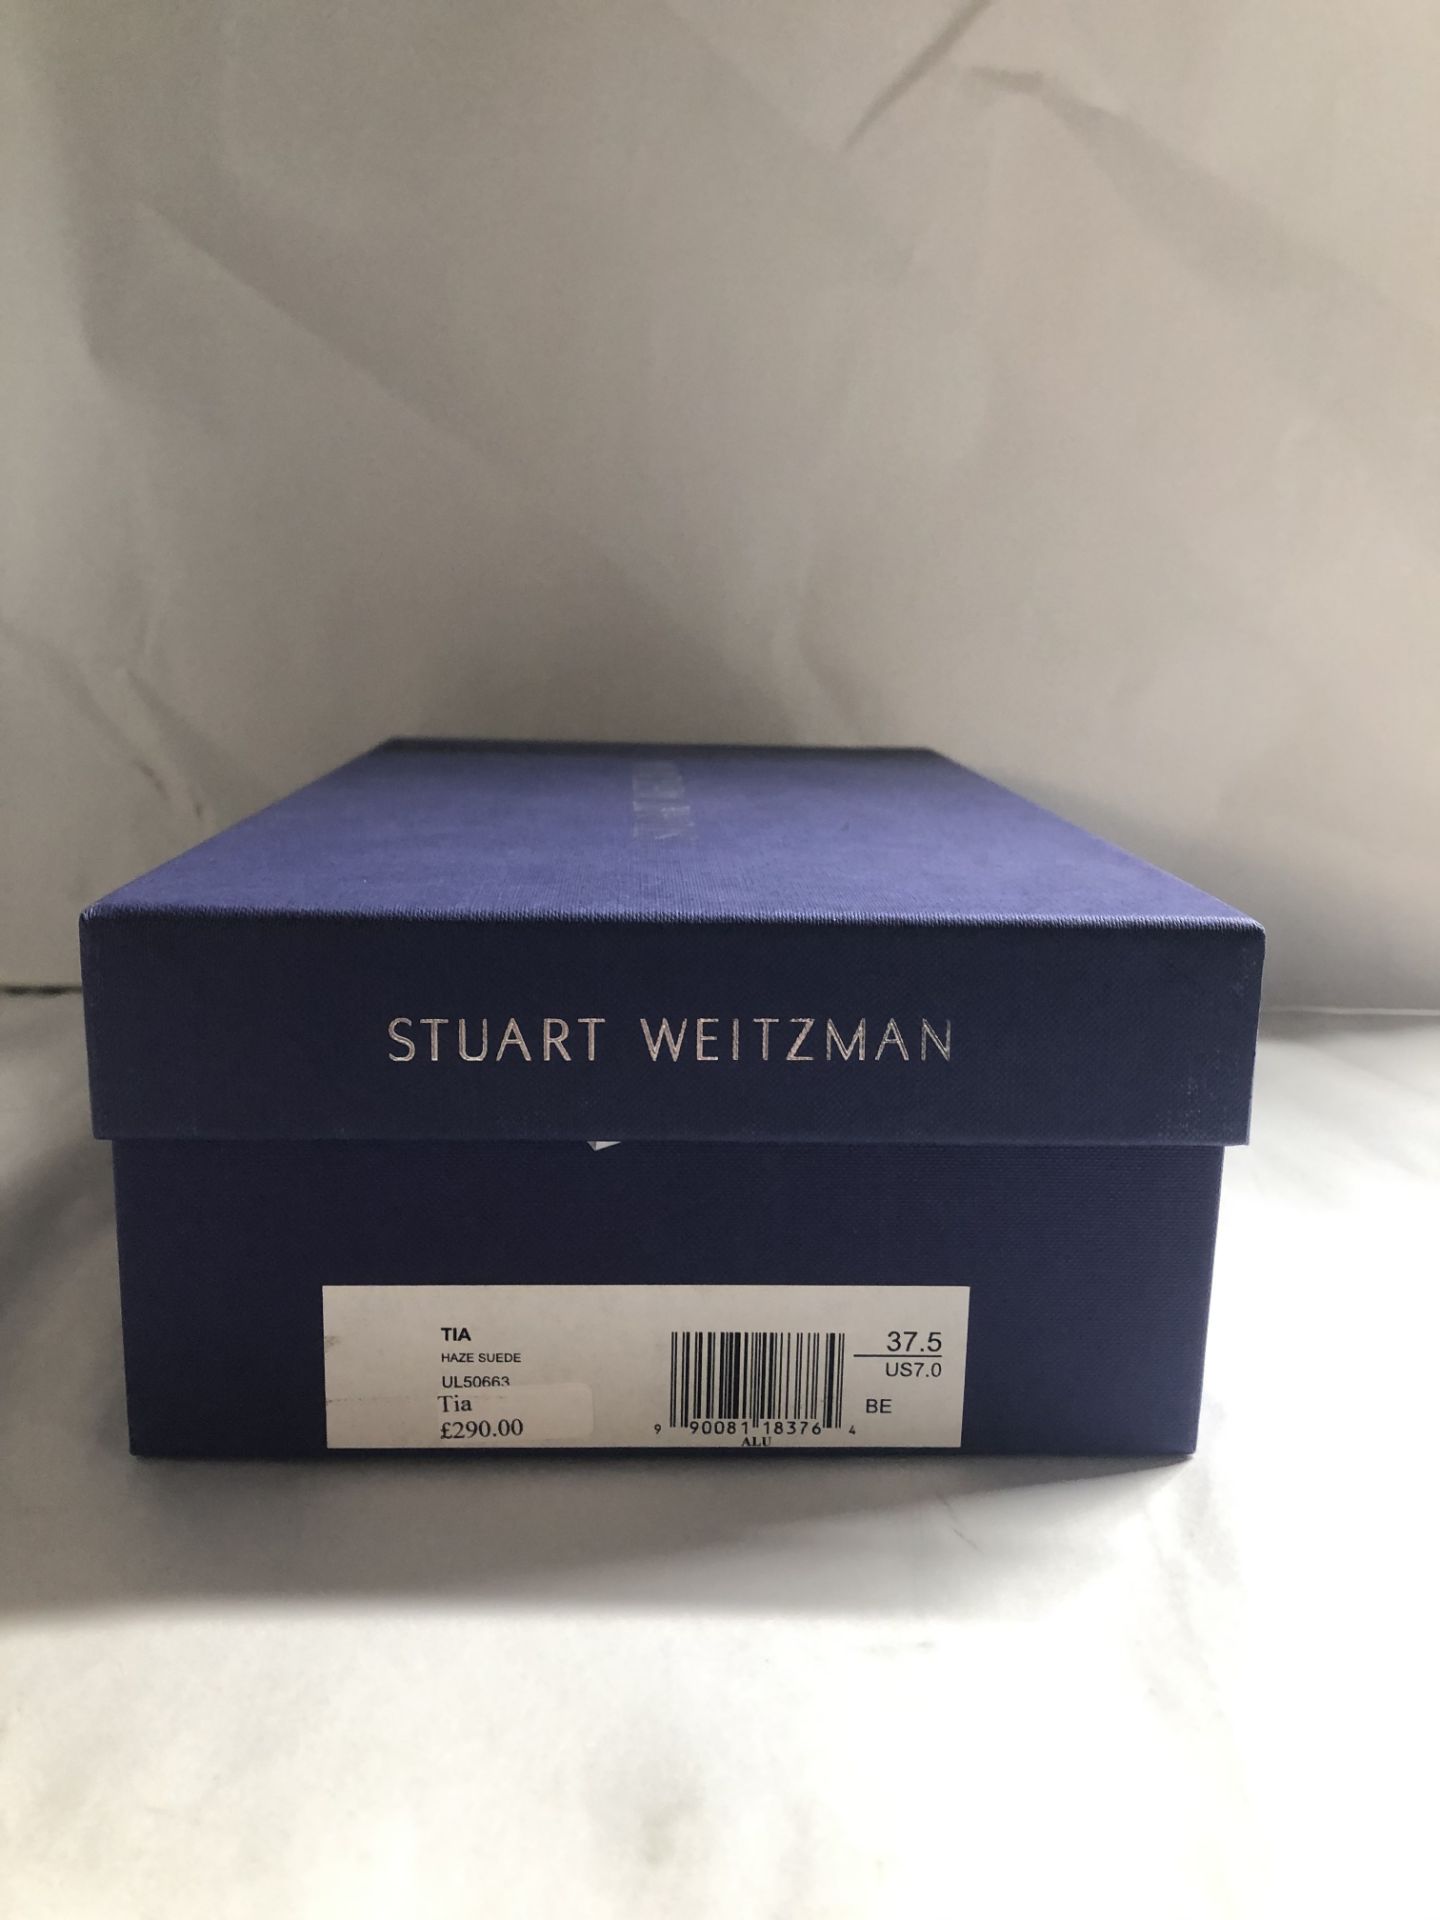 Stuart Weitzman Tia Haze Suede Heels. EU 37.5 RRP £ 290.00 - Image 2 of 2